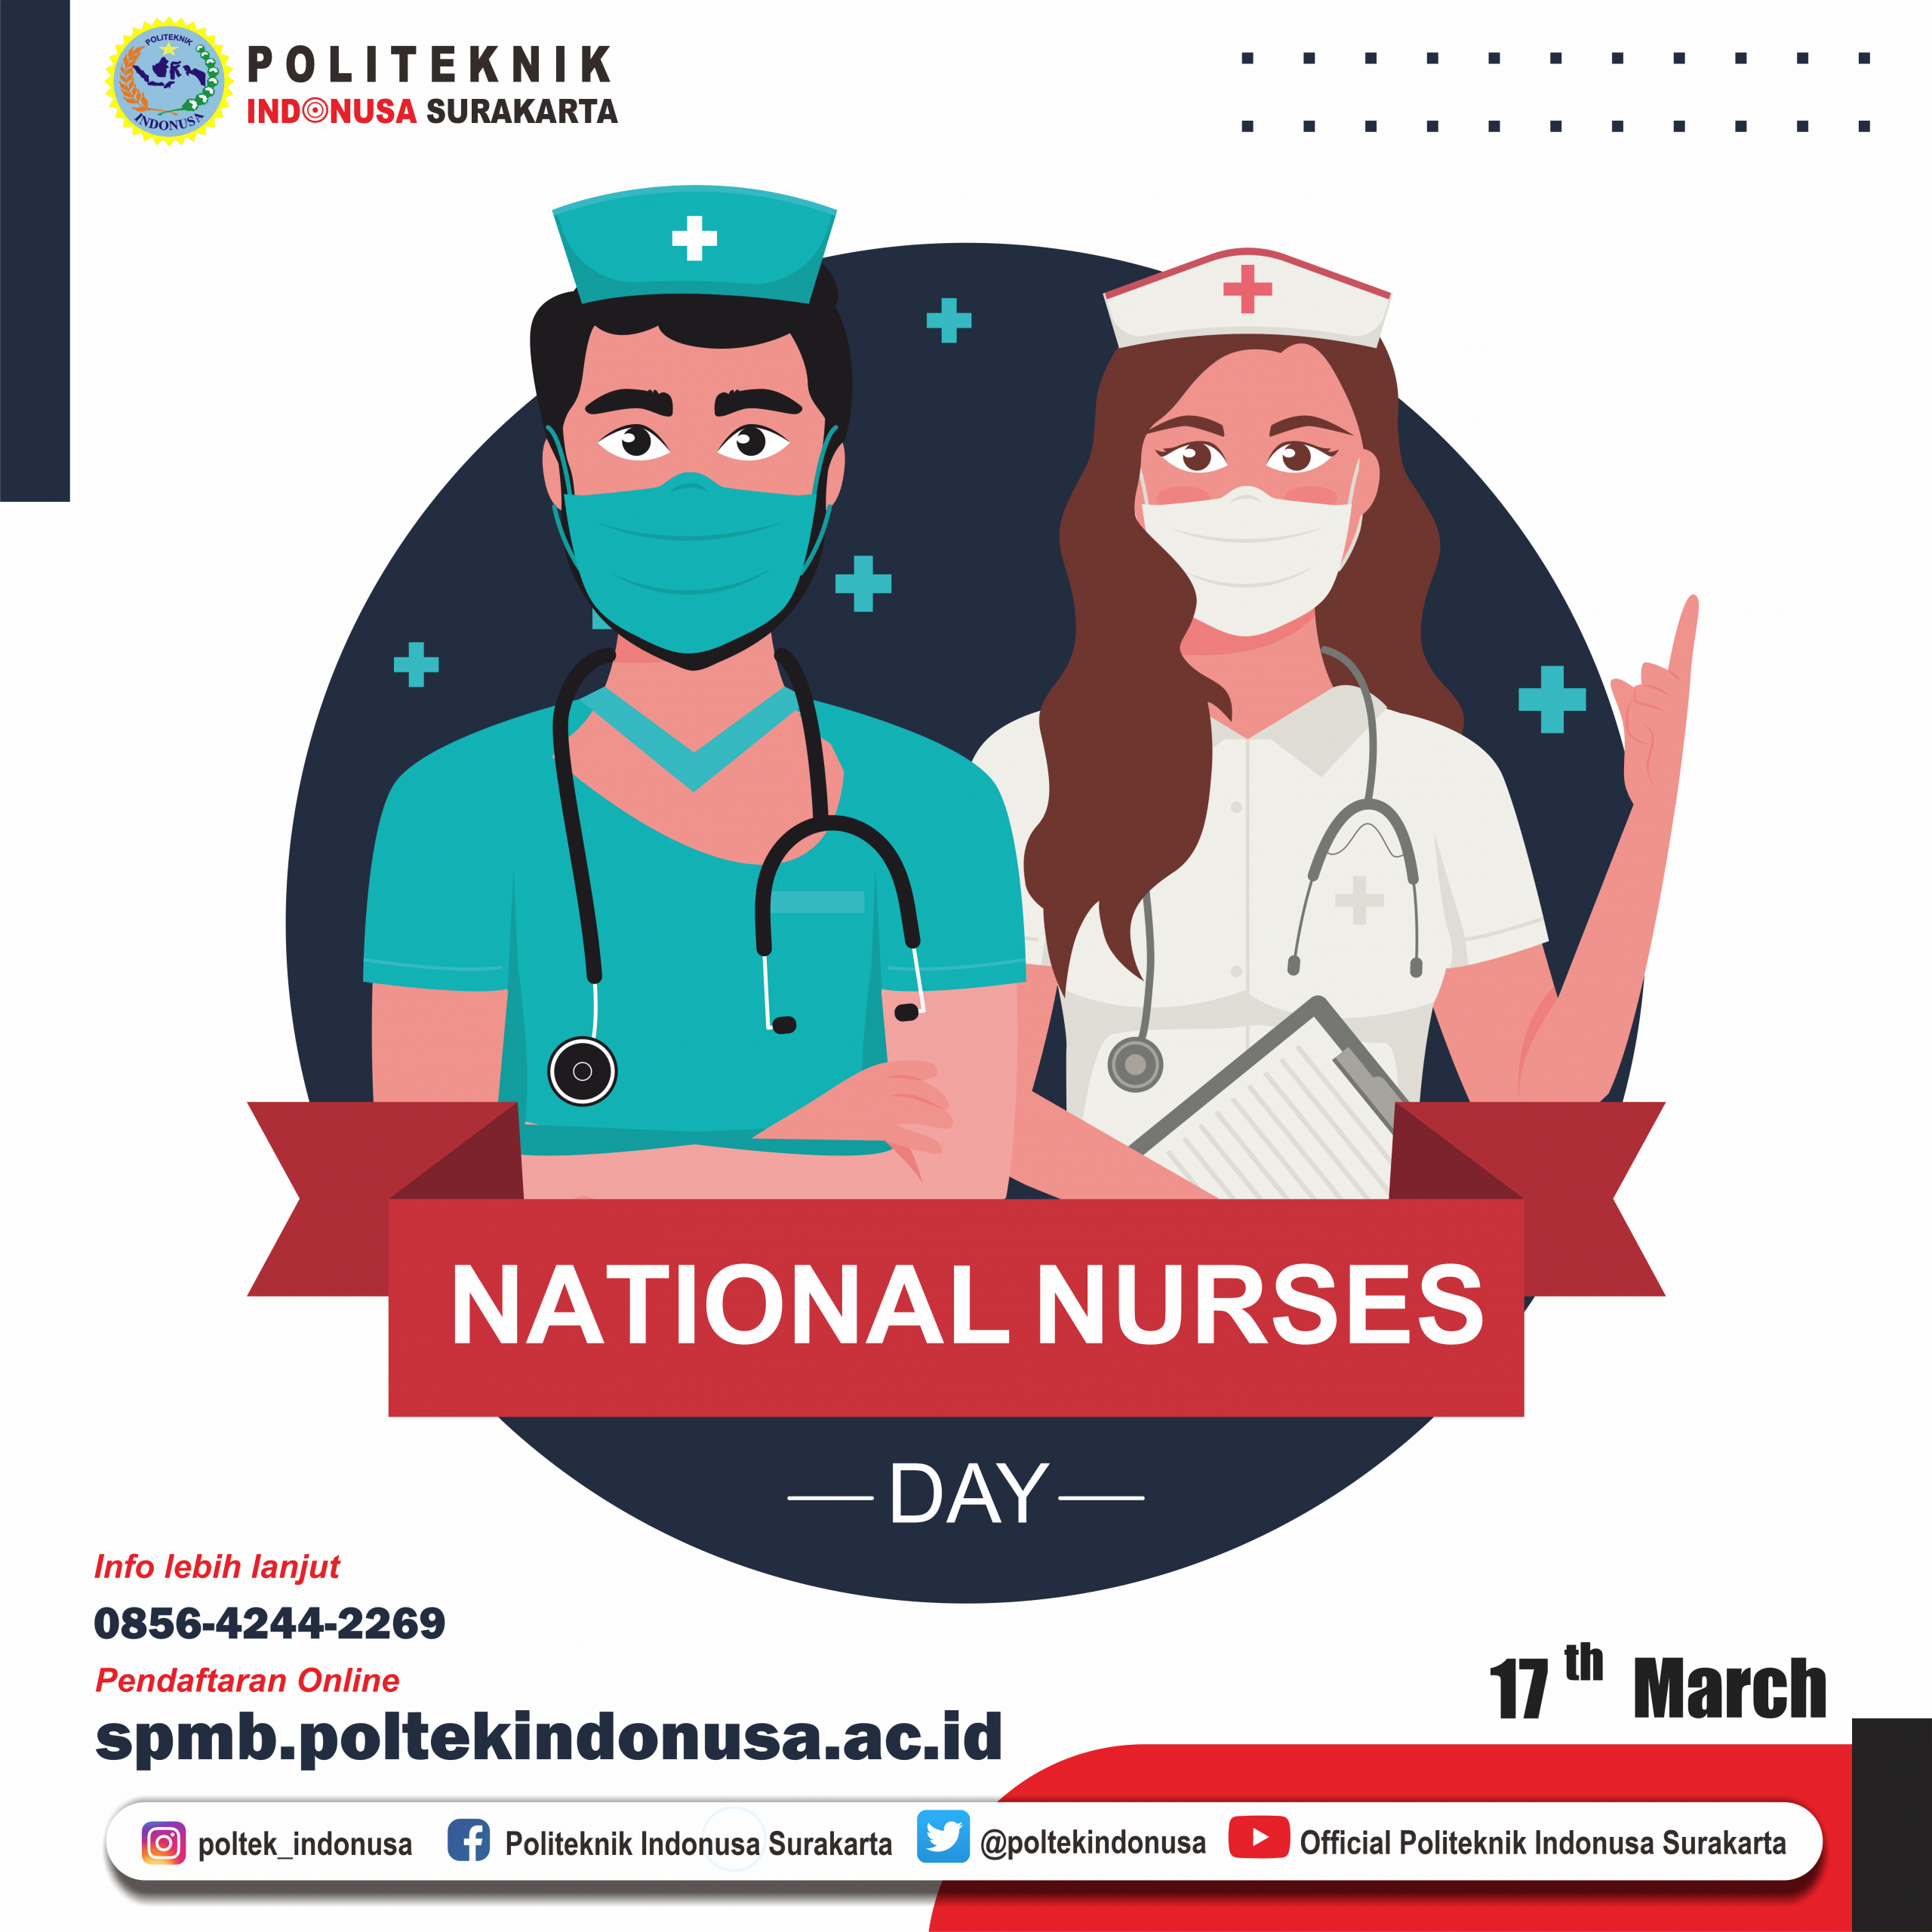 Hari Perawat Nasional